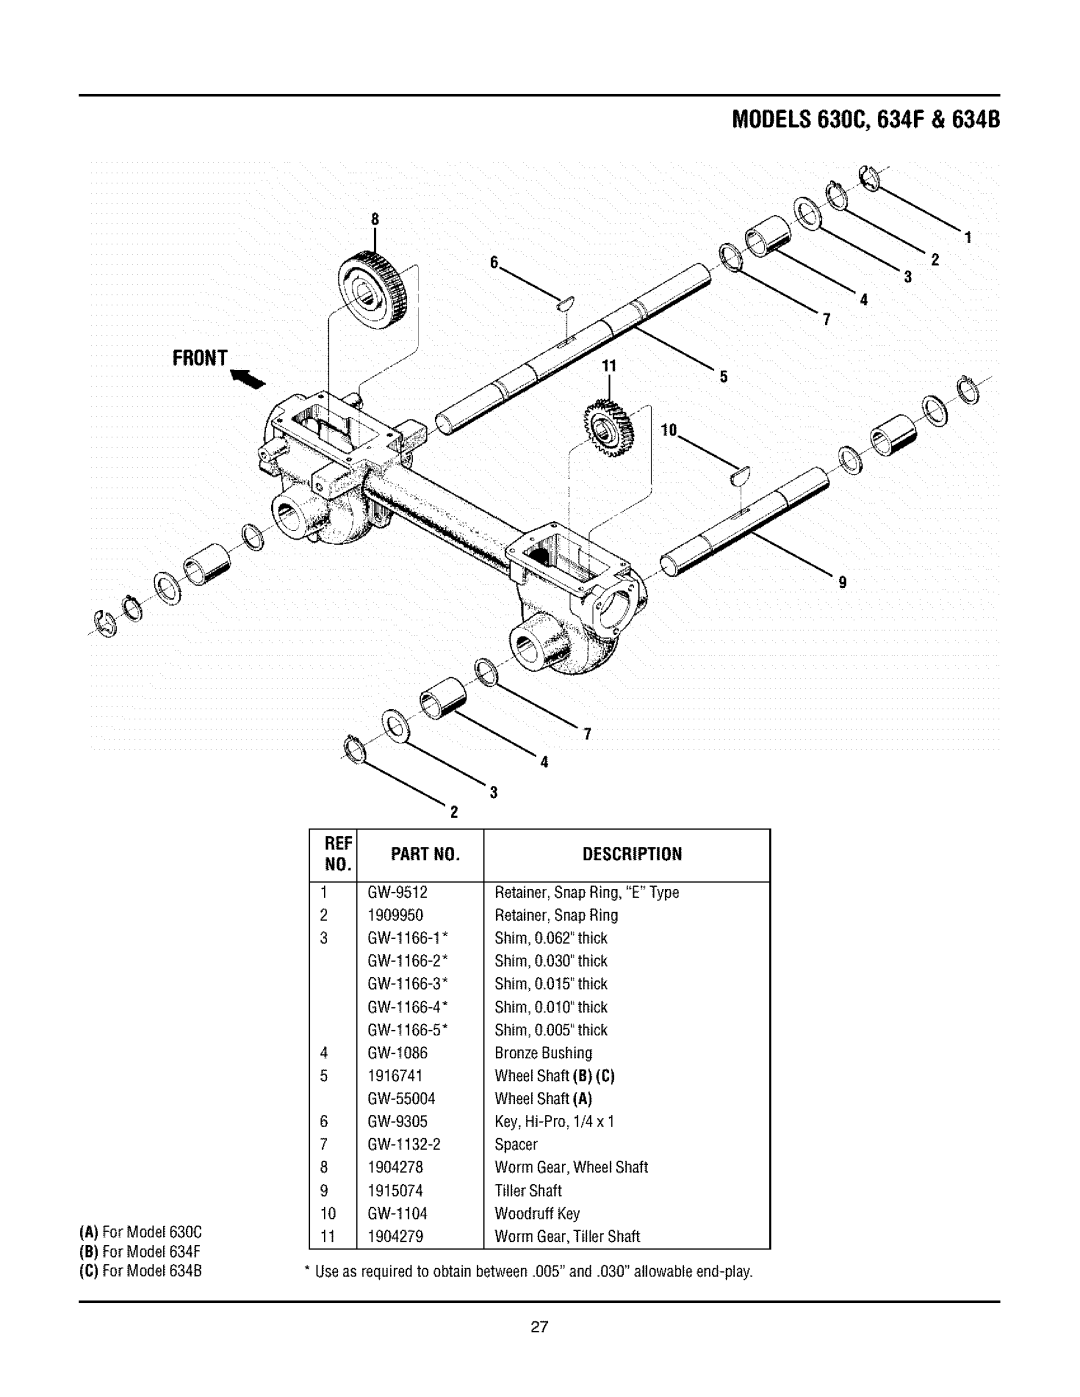 Troy-Bilt 630CN manual Front, 8 3 4, MODELS630C, 634F & 634B, Partno, Description 